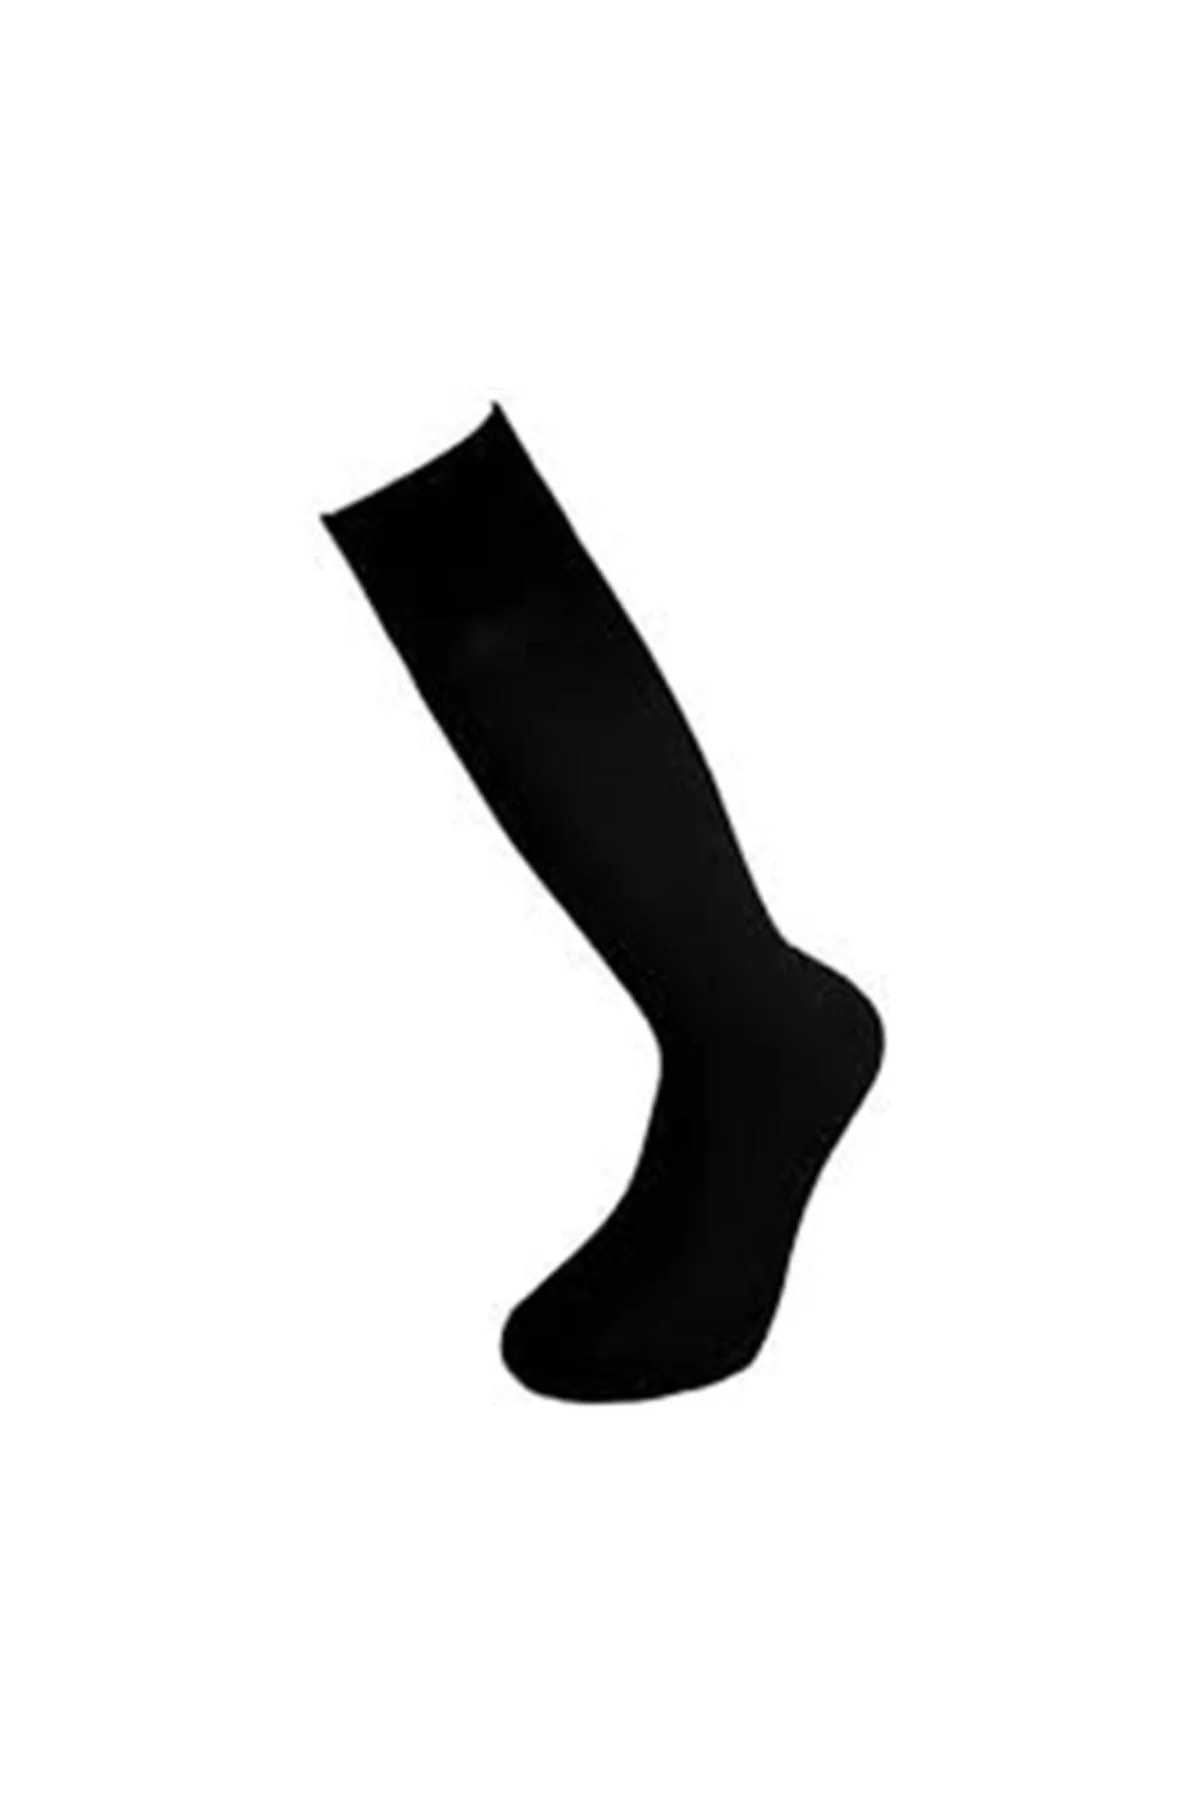 Bora Uzun Asker Çorabı Siyah Askeri Çorap 6 lı